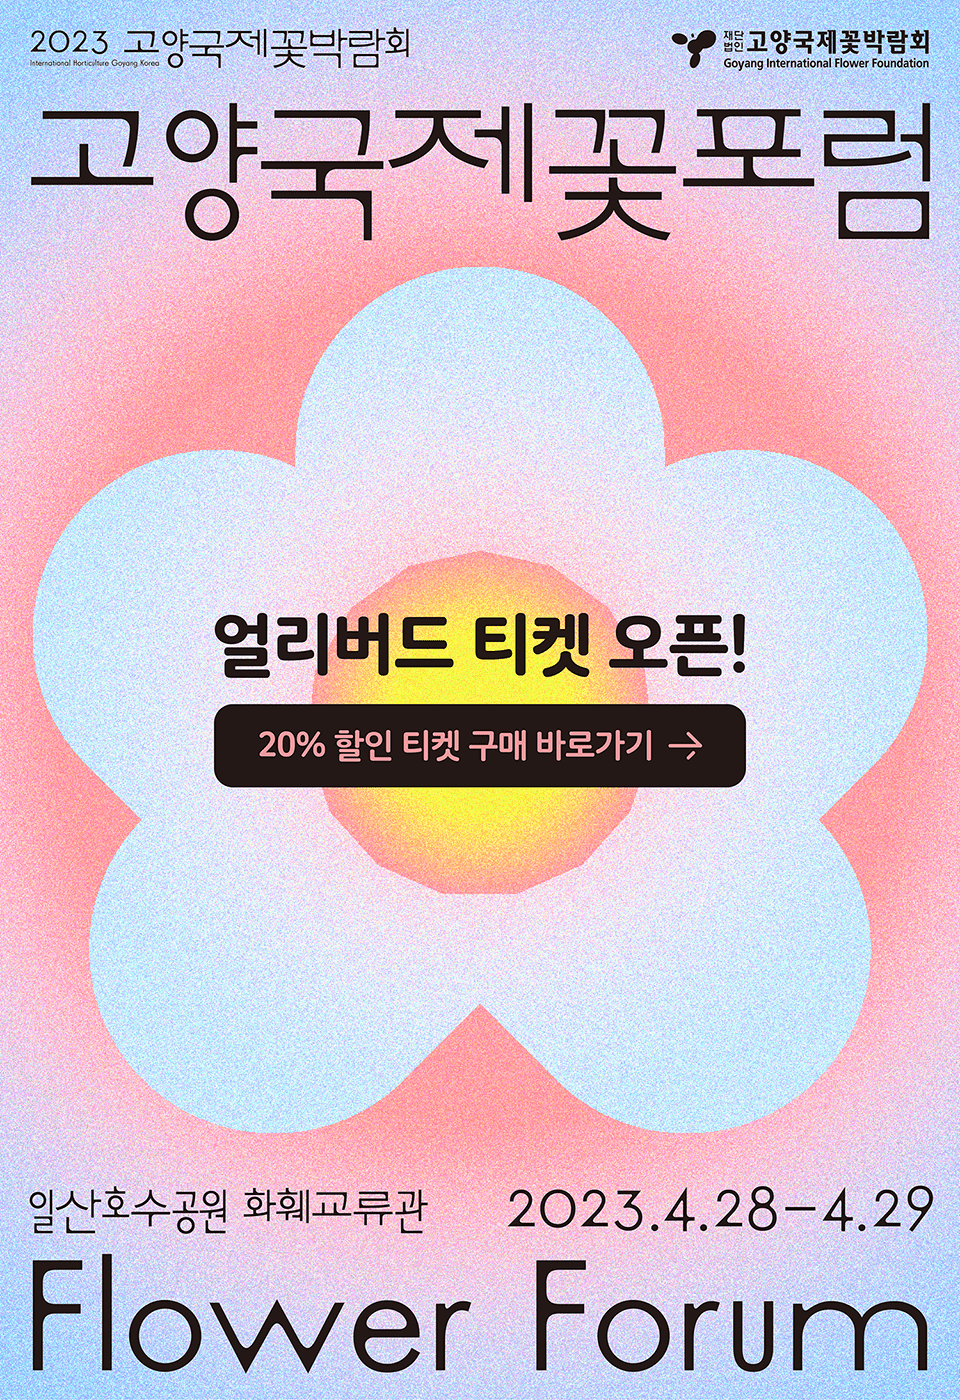 2023 고양국제꽃포럼 첫 개최 및 얼리버드 티켓 오픈!